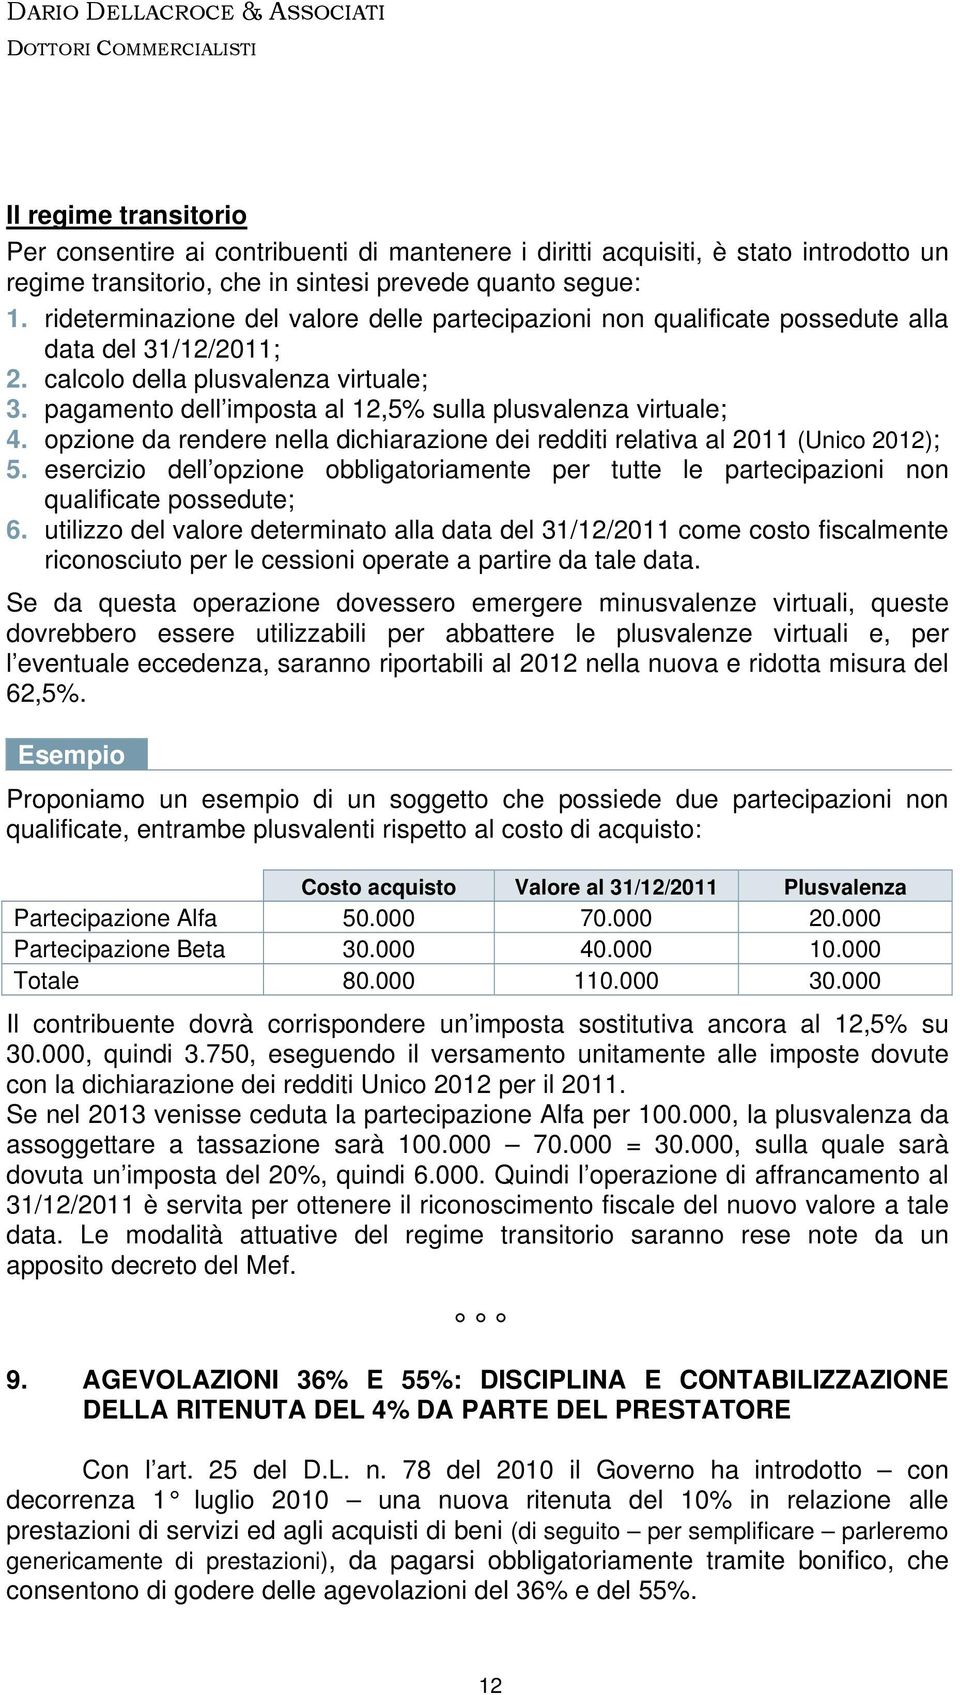 pagamento dell imposta al 12,5% sulla plusvalenza virtuale; 4. opzione da rendere nella dichiarazione dei redditi relativa al 2011 (Unico 2012); 5.